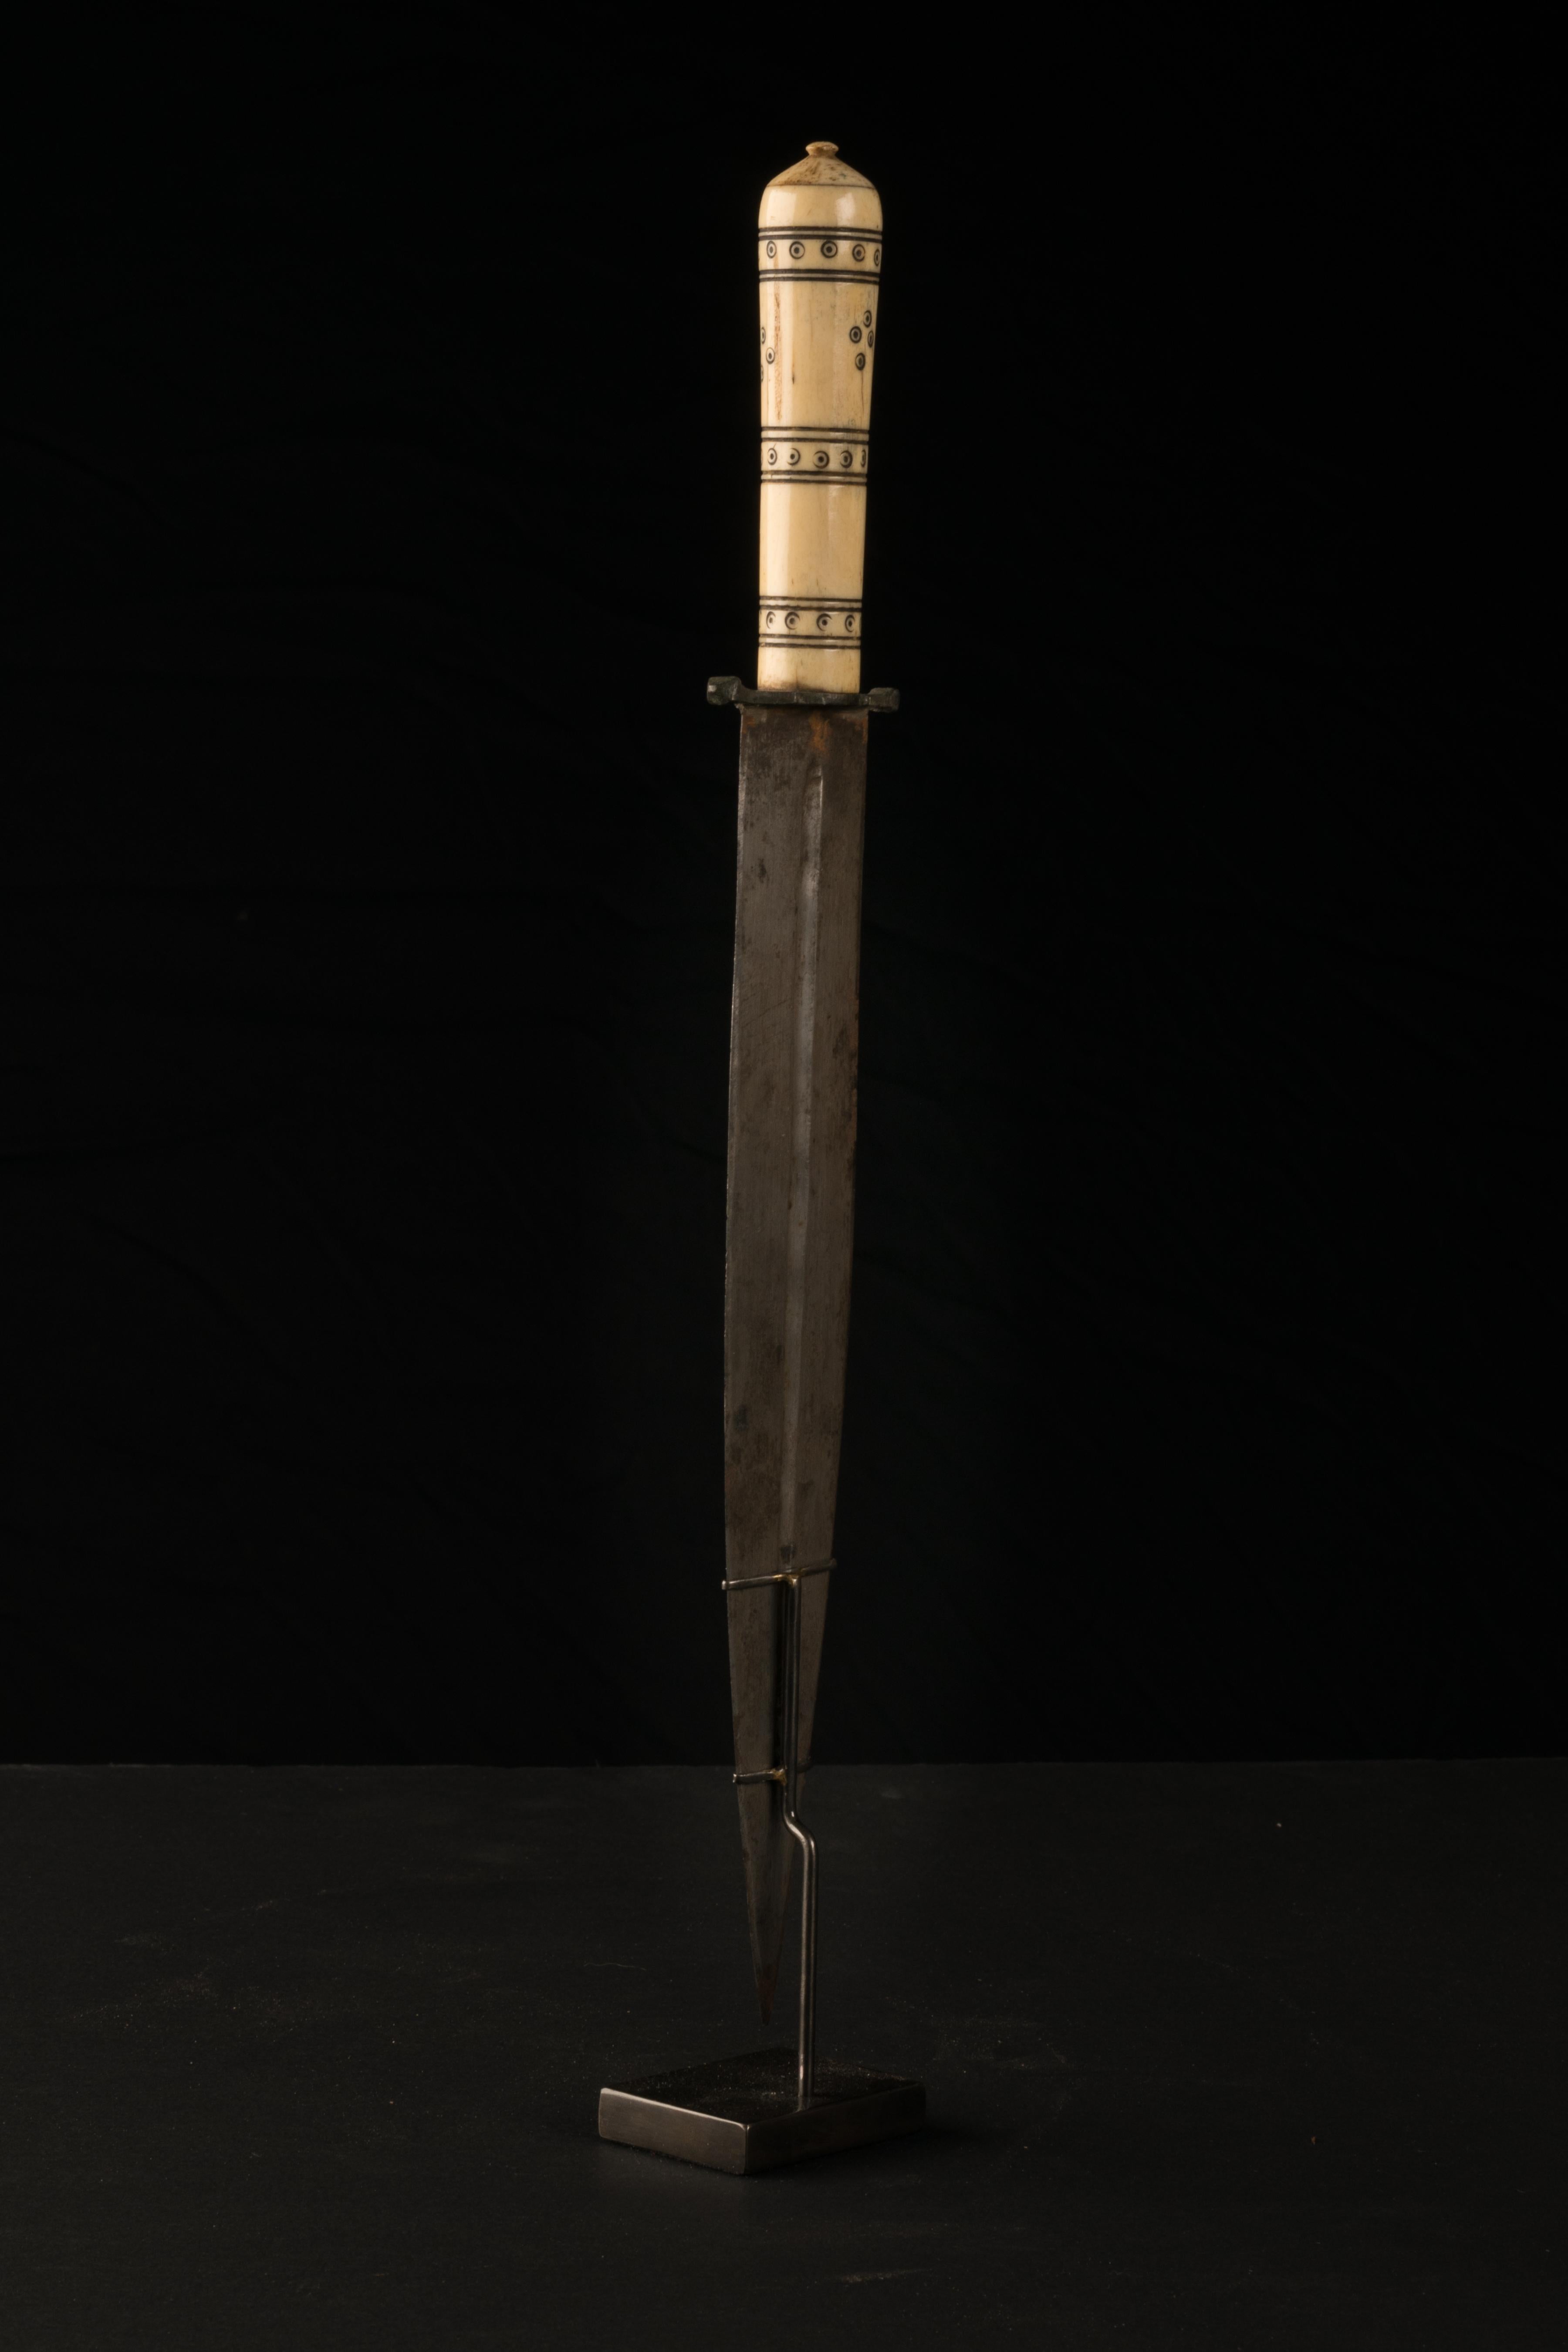 dagger for sale in nigeria